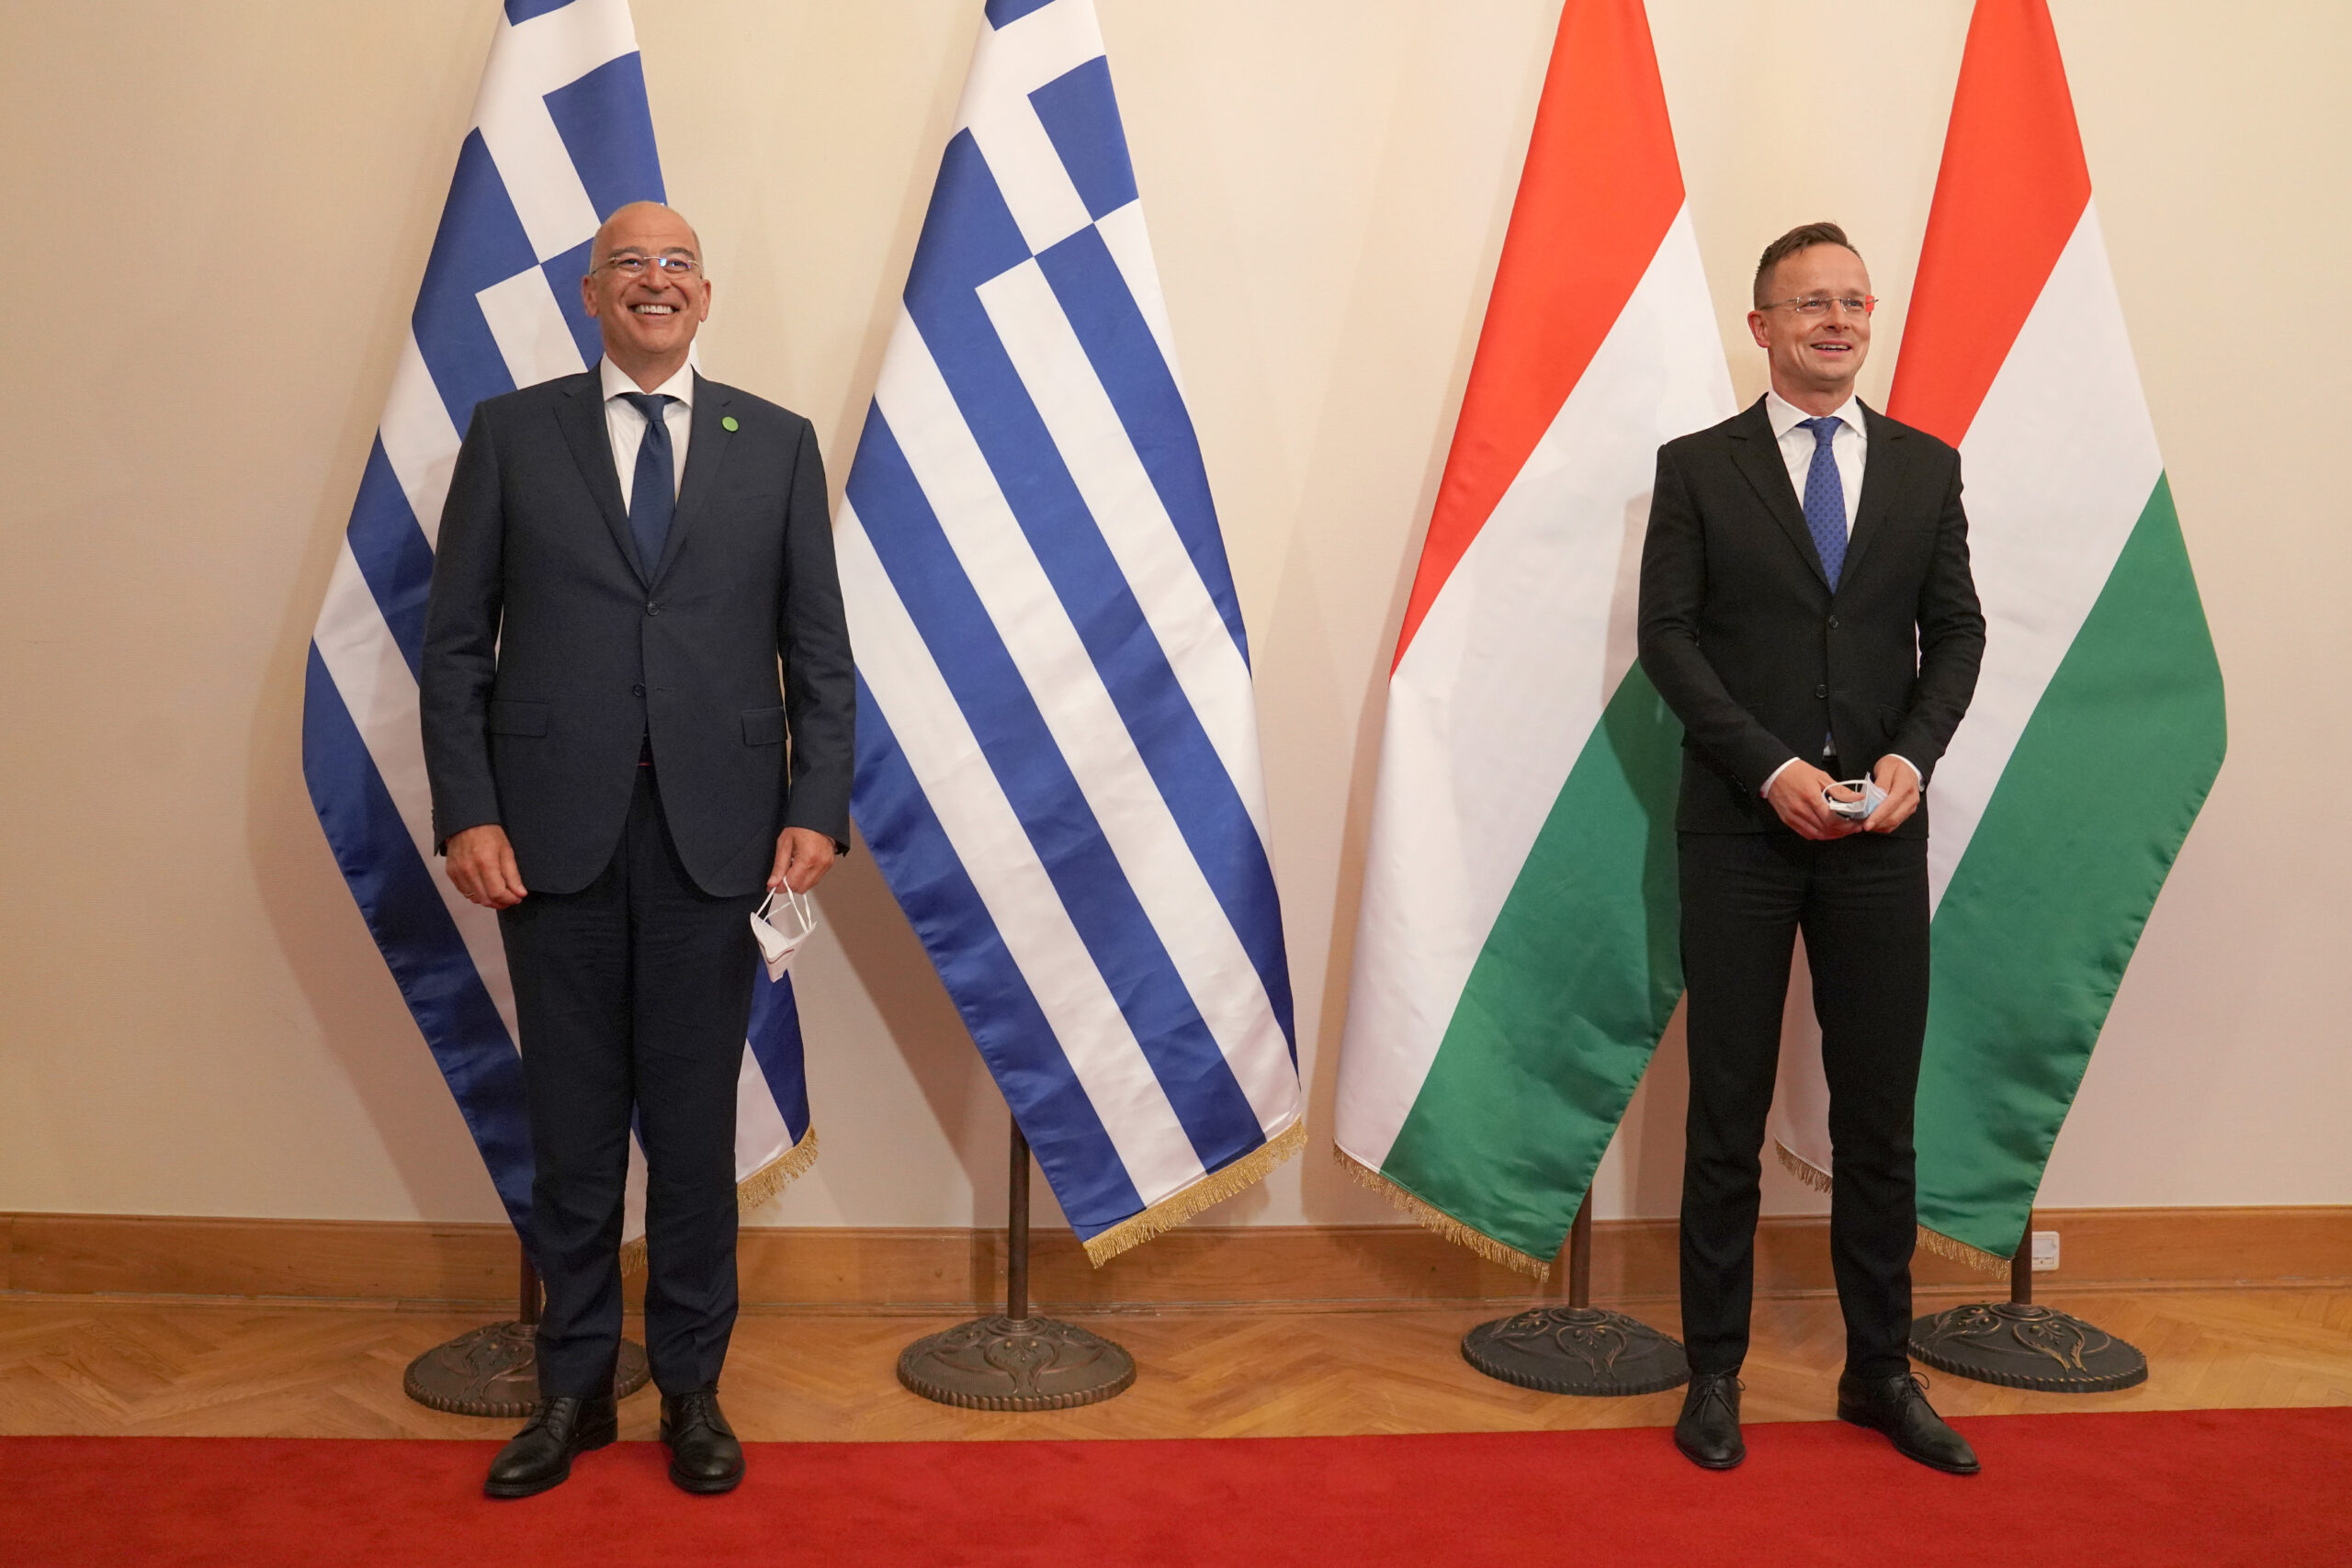 Επίσκεψη Υπουργού Εξωτερικών, κ. Νίκου Δένδια, στην Ουγγαρία και συνάντηση με τον Υπουργό Εξωτερικών, κ. Peter Szijjarto,  (Βουδαπέστη, 02.10.2020)